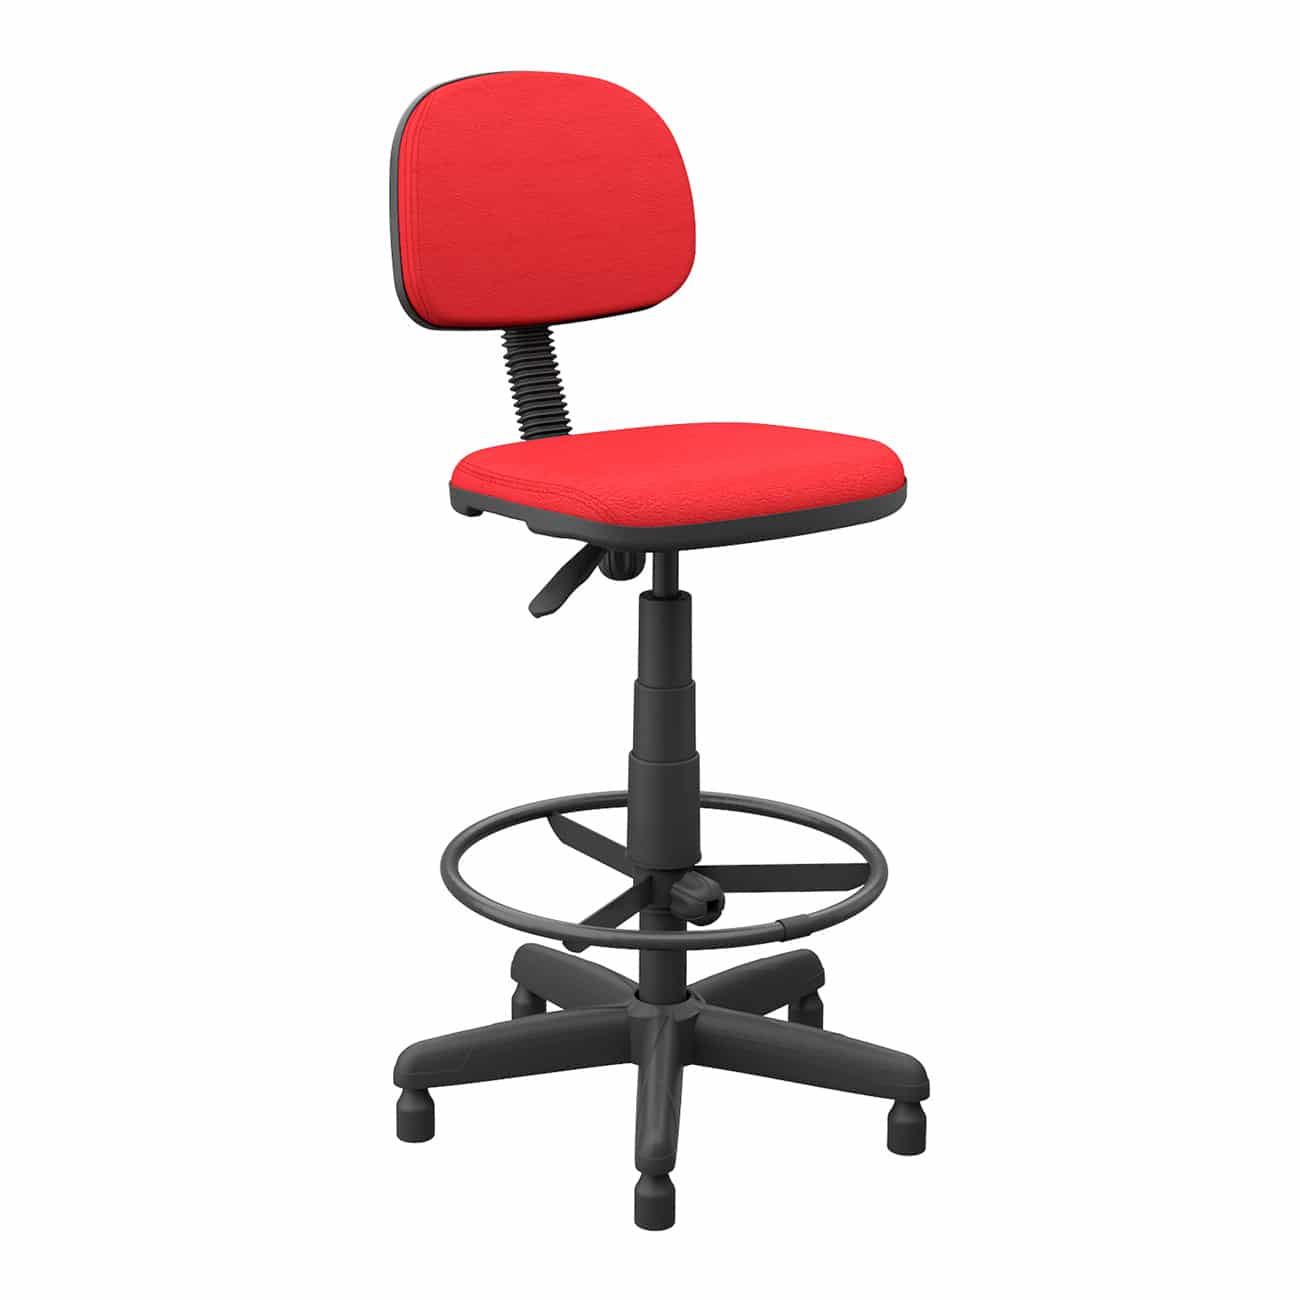 Cadeira Caixa Secretária Slim Operativa Plus Base giratória com regulagem de altura e sapatas fixa Aro apoia pés regulável - Cod. 39778